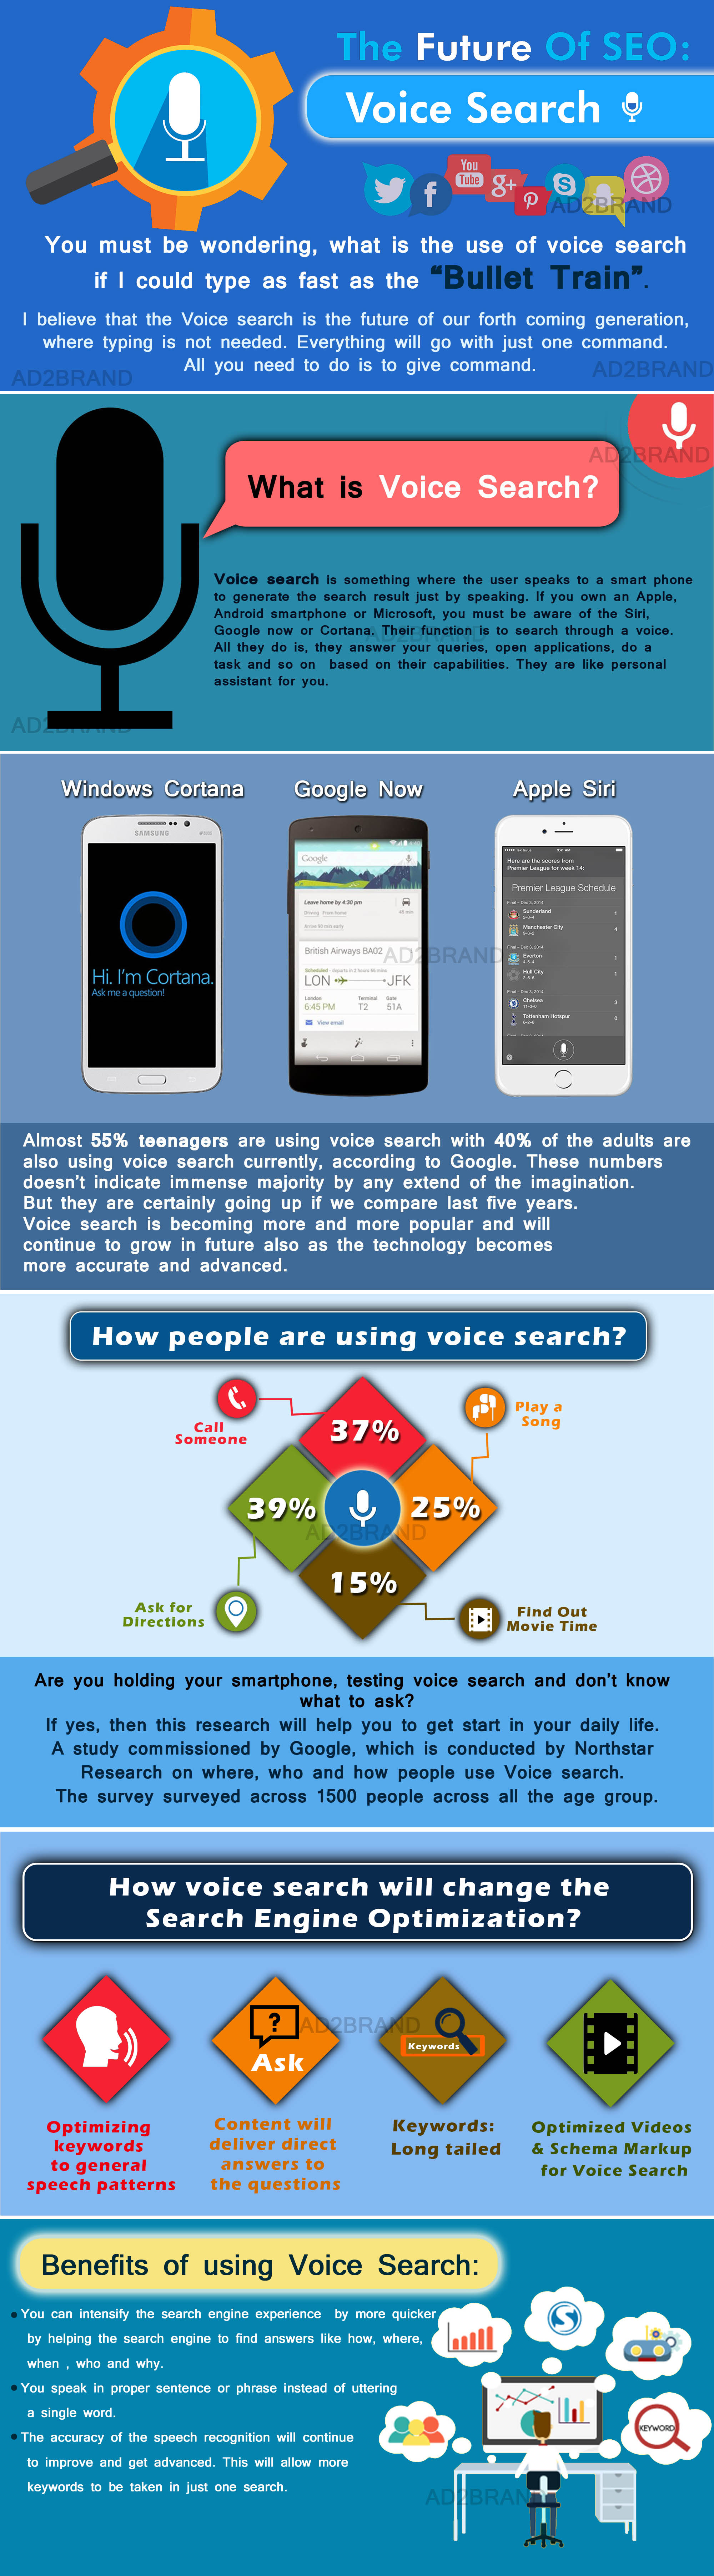 Voice search: the future of seo/search